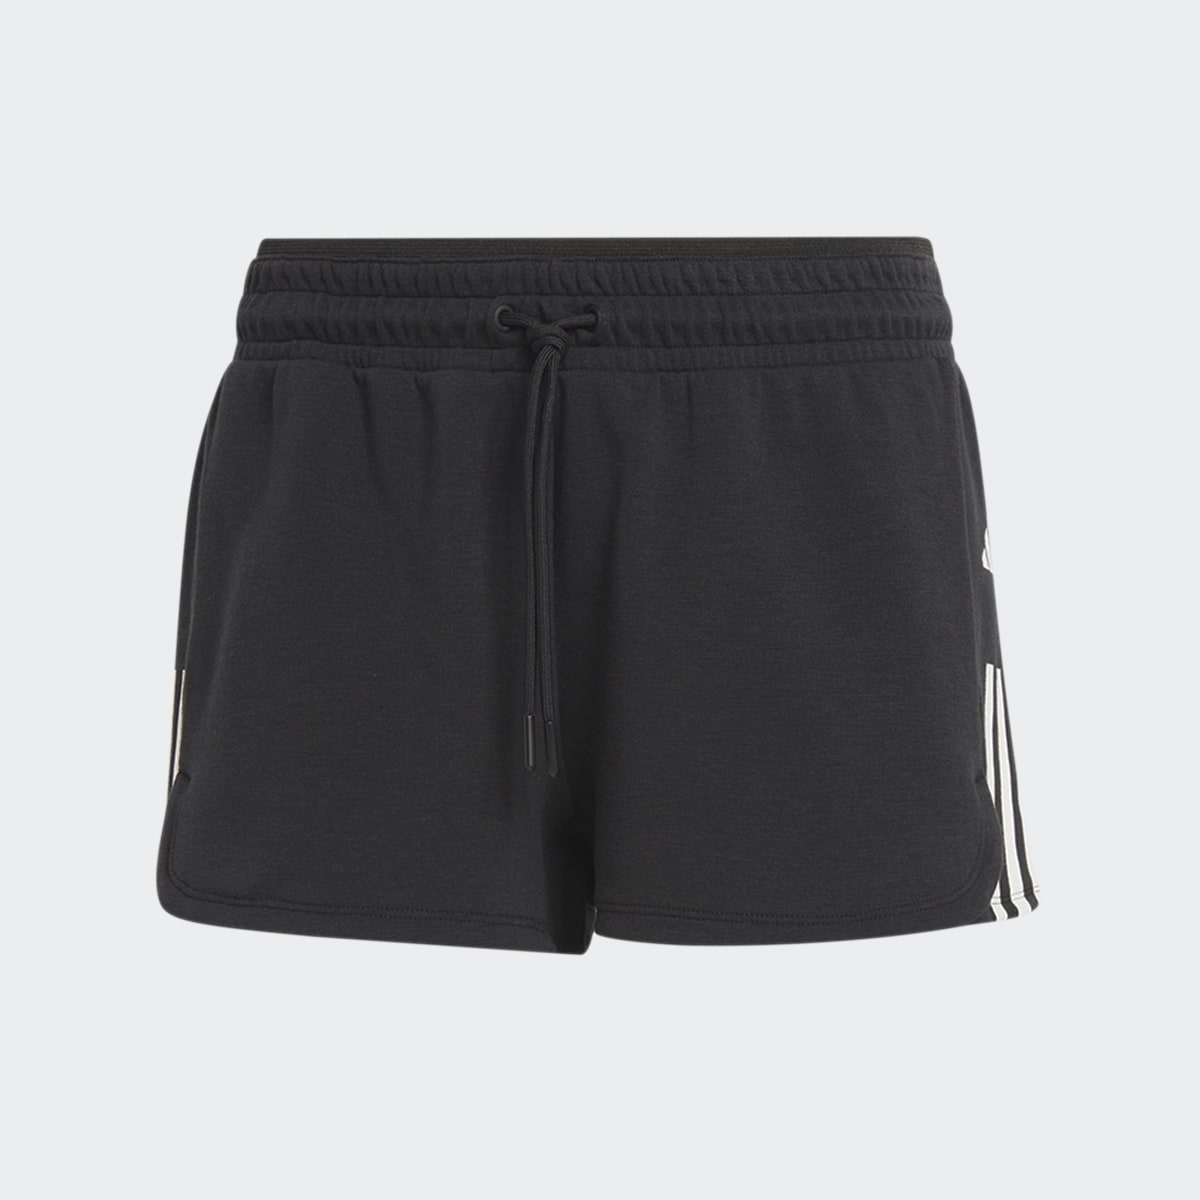 Adidas Train Essentials Train Cotton 3-Streifen Pacer Shorts. 4